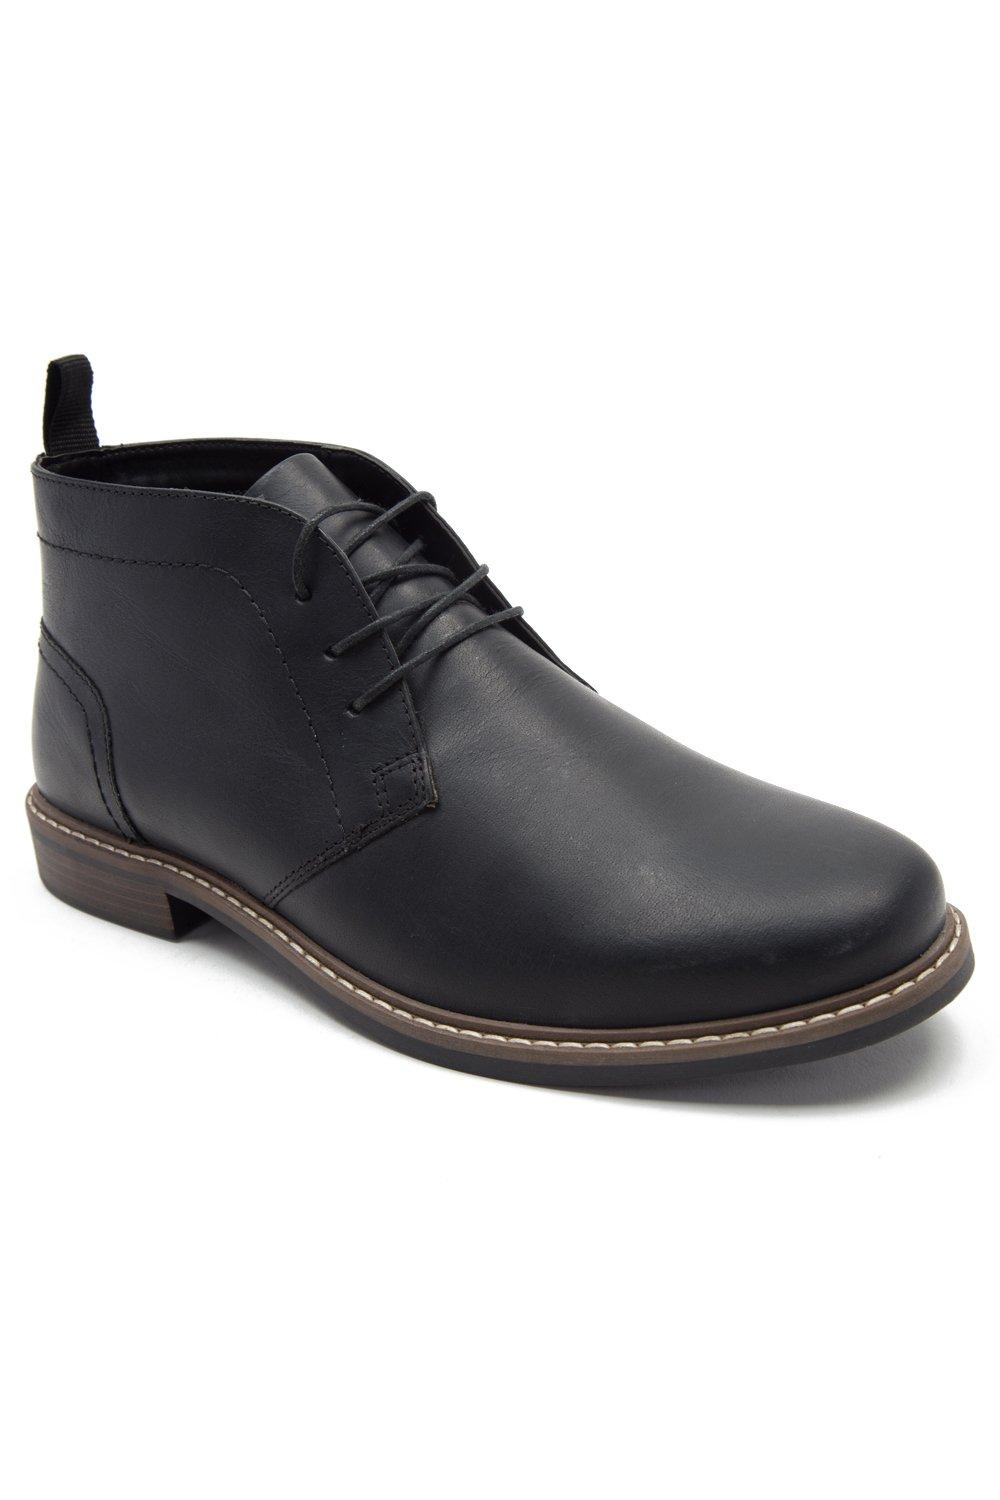 Кожаные ботильоны 'Dallas' Desert Chukka Thomas Crick, черный мужские повседневные ботинки уличные короткие ботинки модные классические удобные дышащие кроссовки вулканизированная подошва